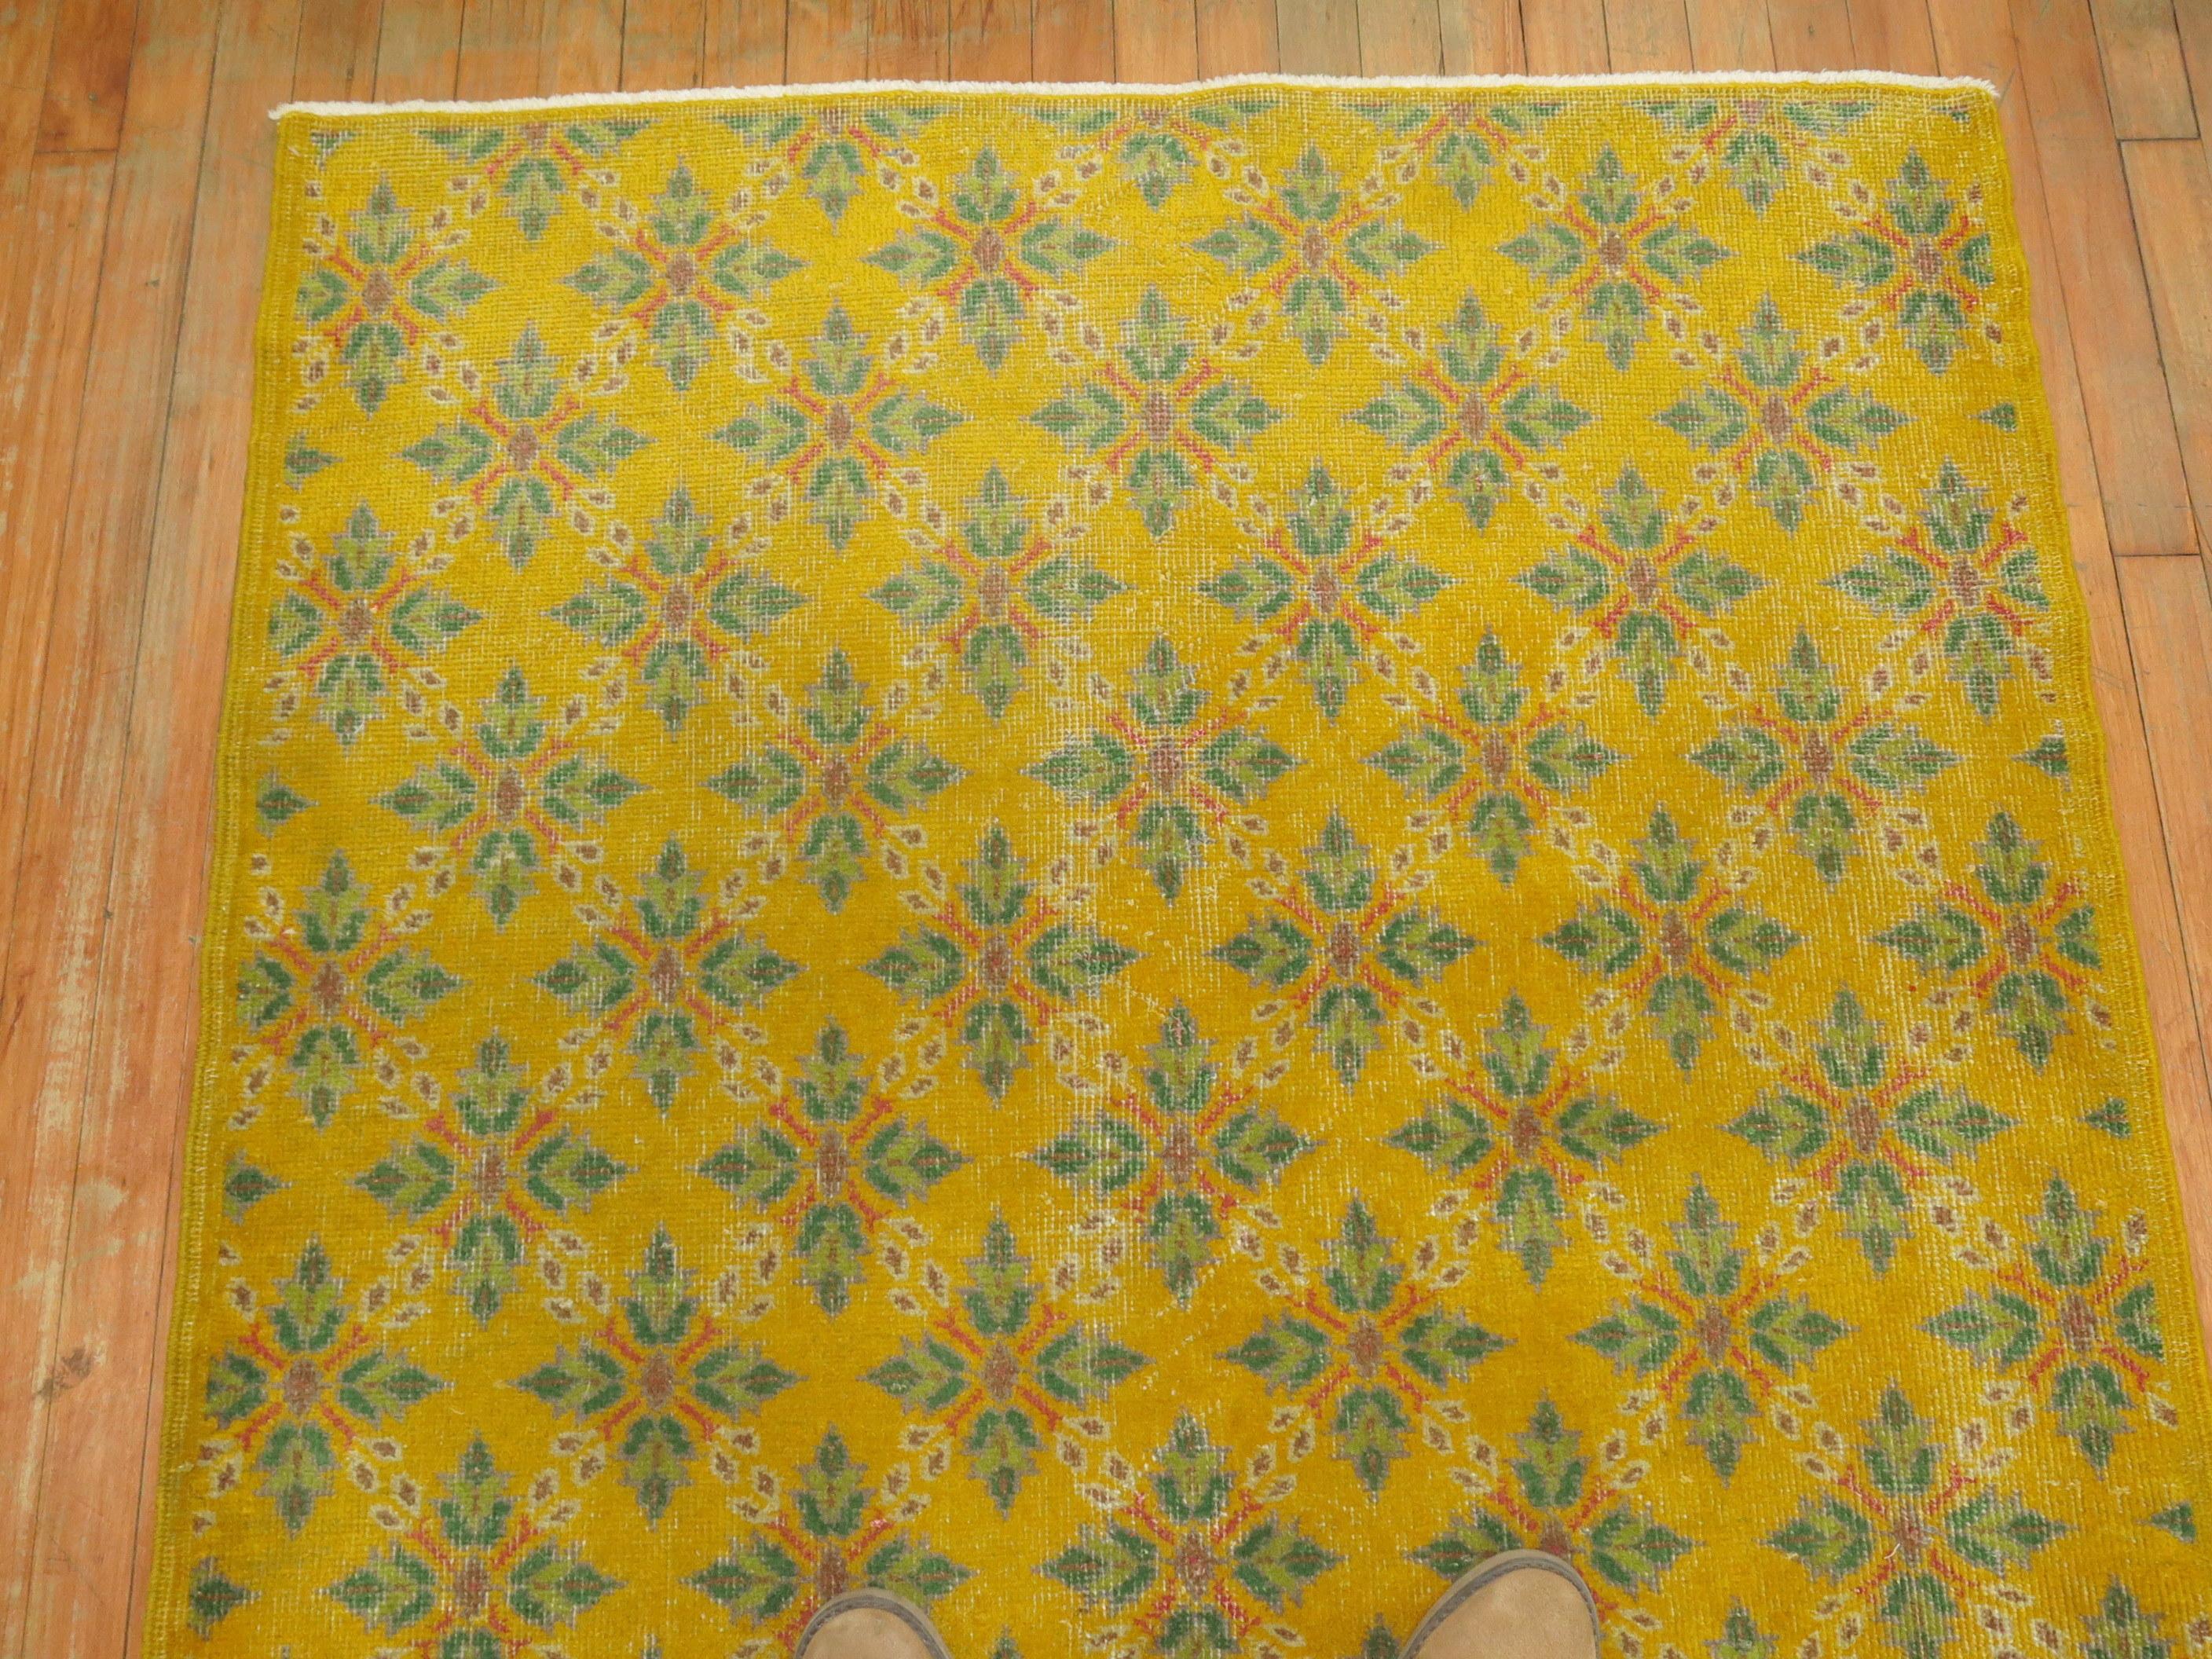 Türkischer anatolischer Teppich mit gelbem Feld, Akzente in Rosa und Grün.